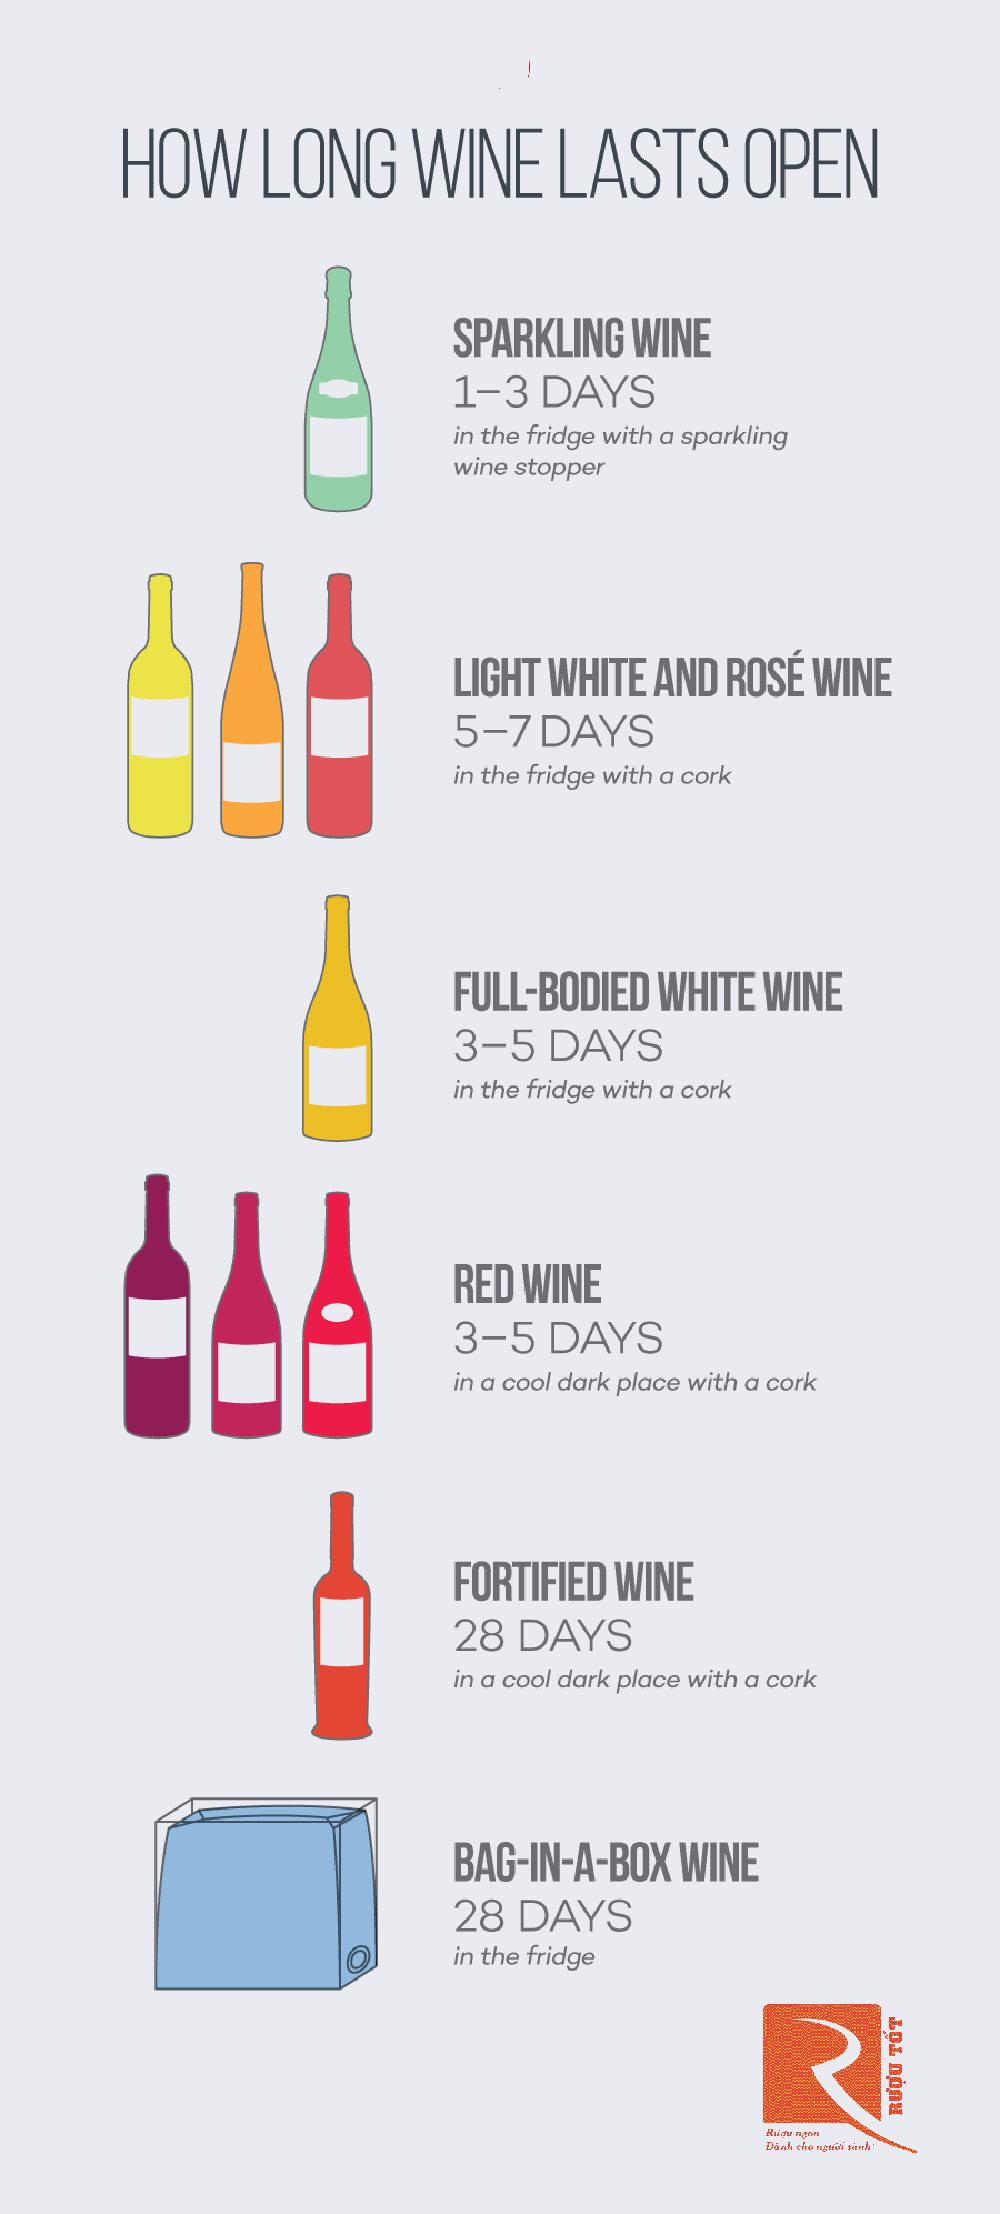 Rượu vang giữ được bao lâu sau khi mở nắp?